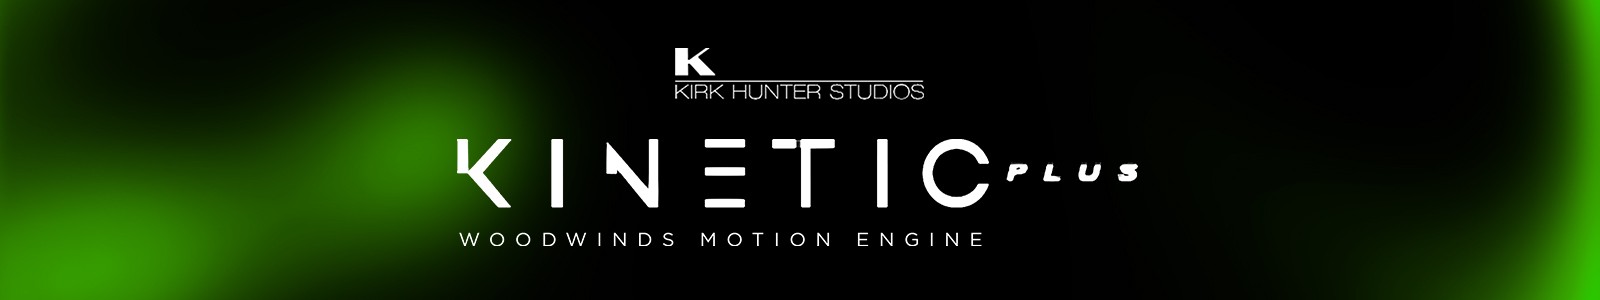 Kinetic Woodwinds Plus by Kirk Hunter Studios